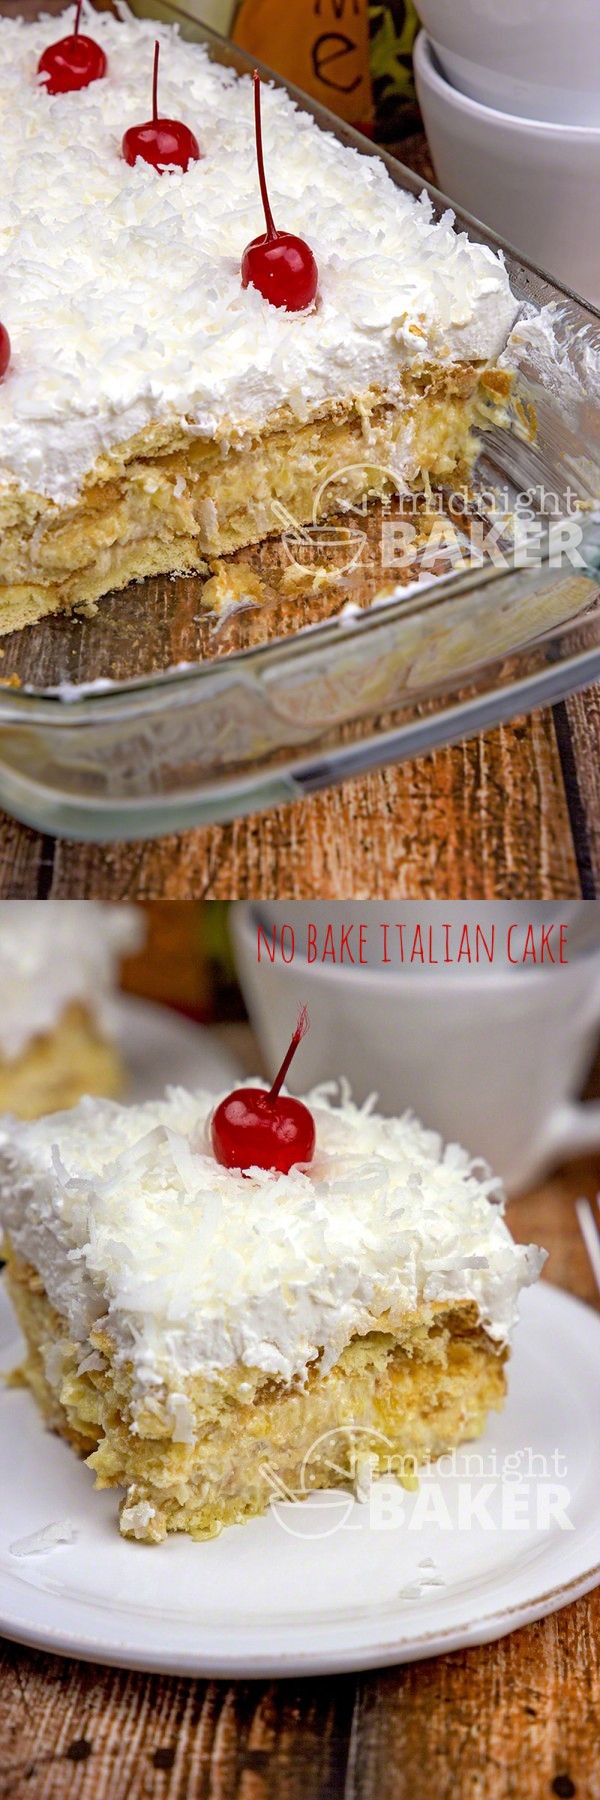 No-Bake Italian Cake